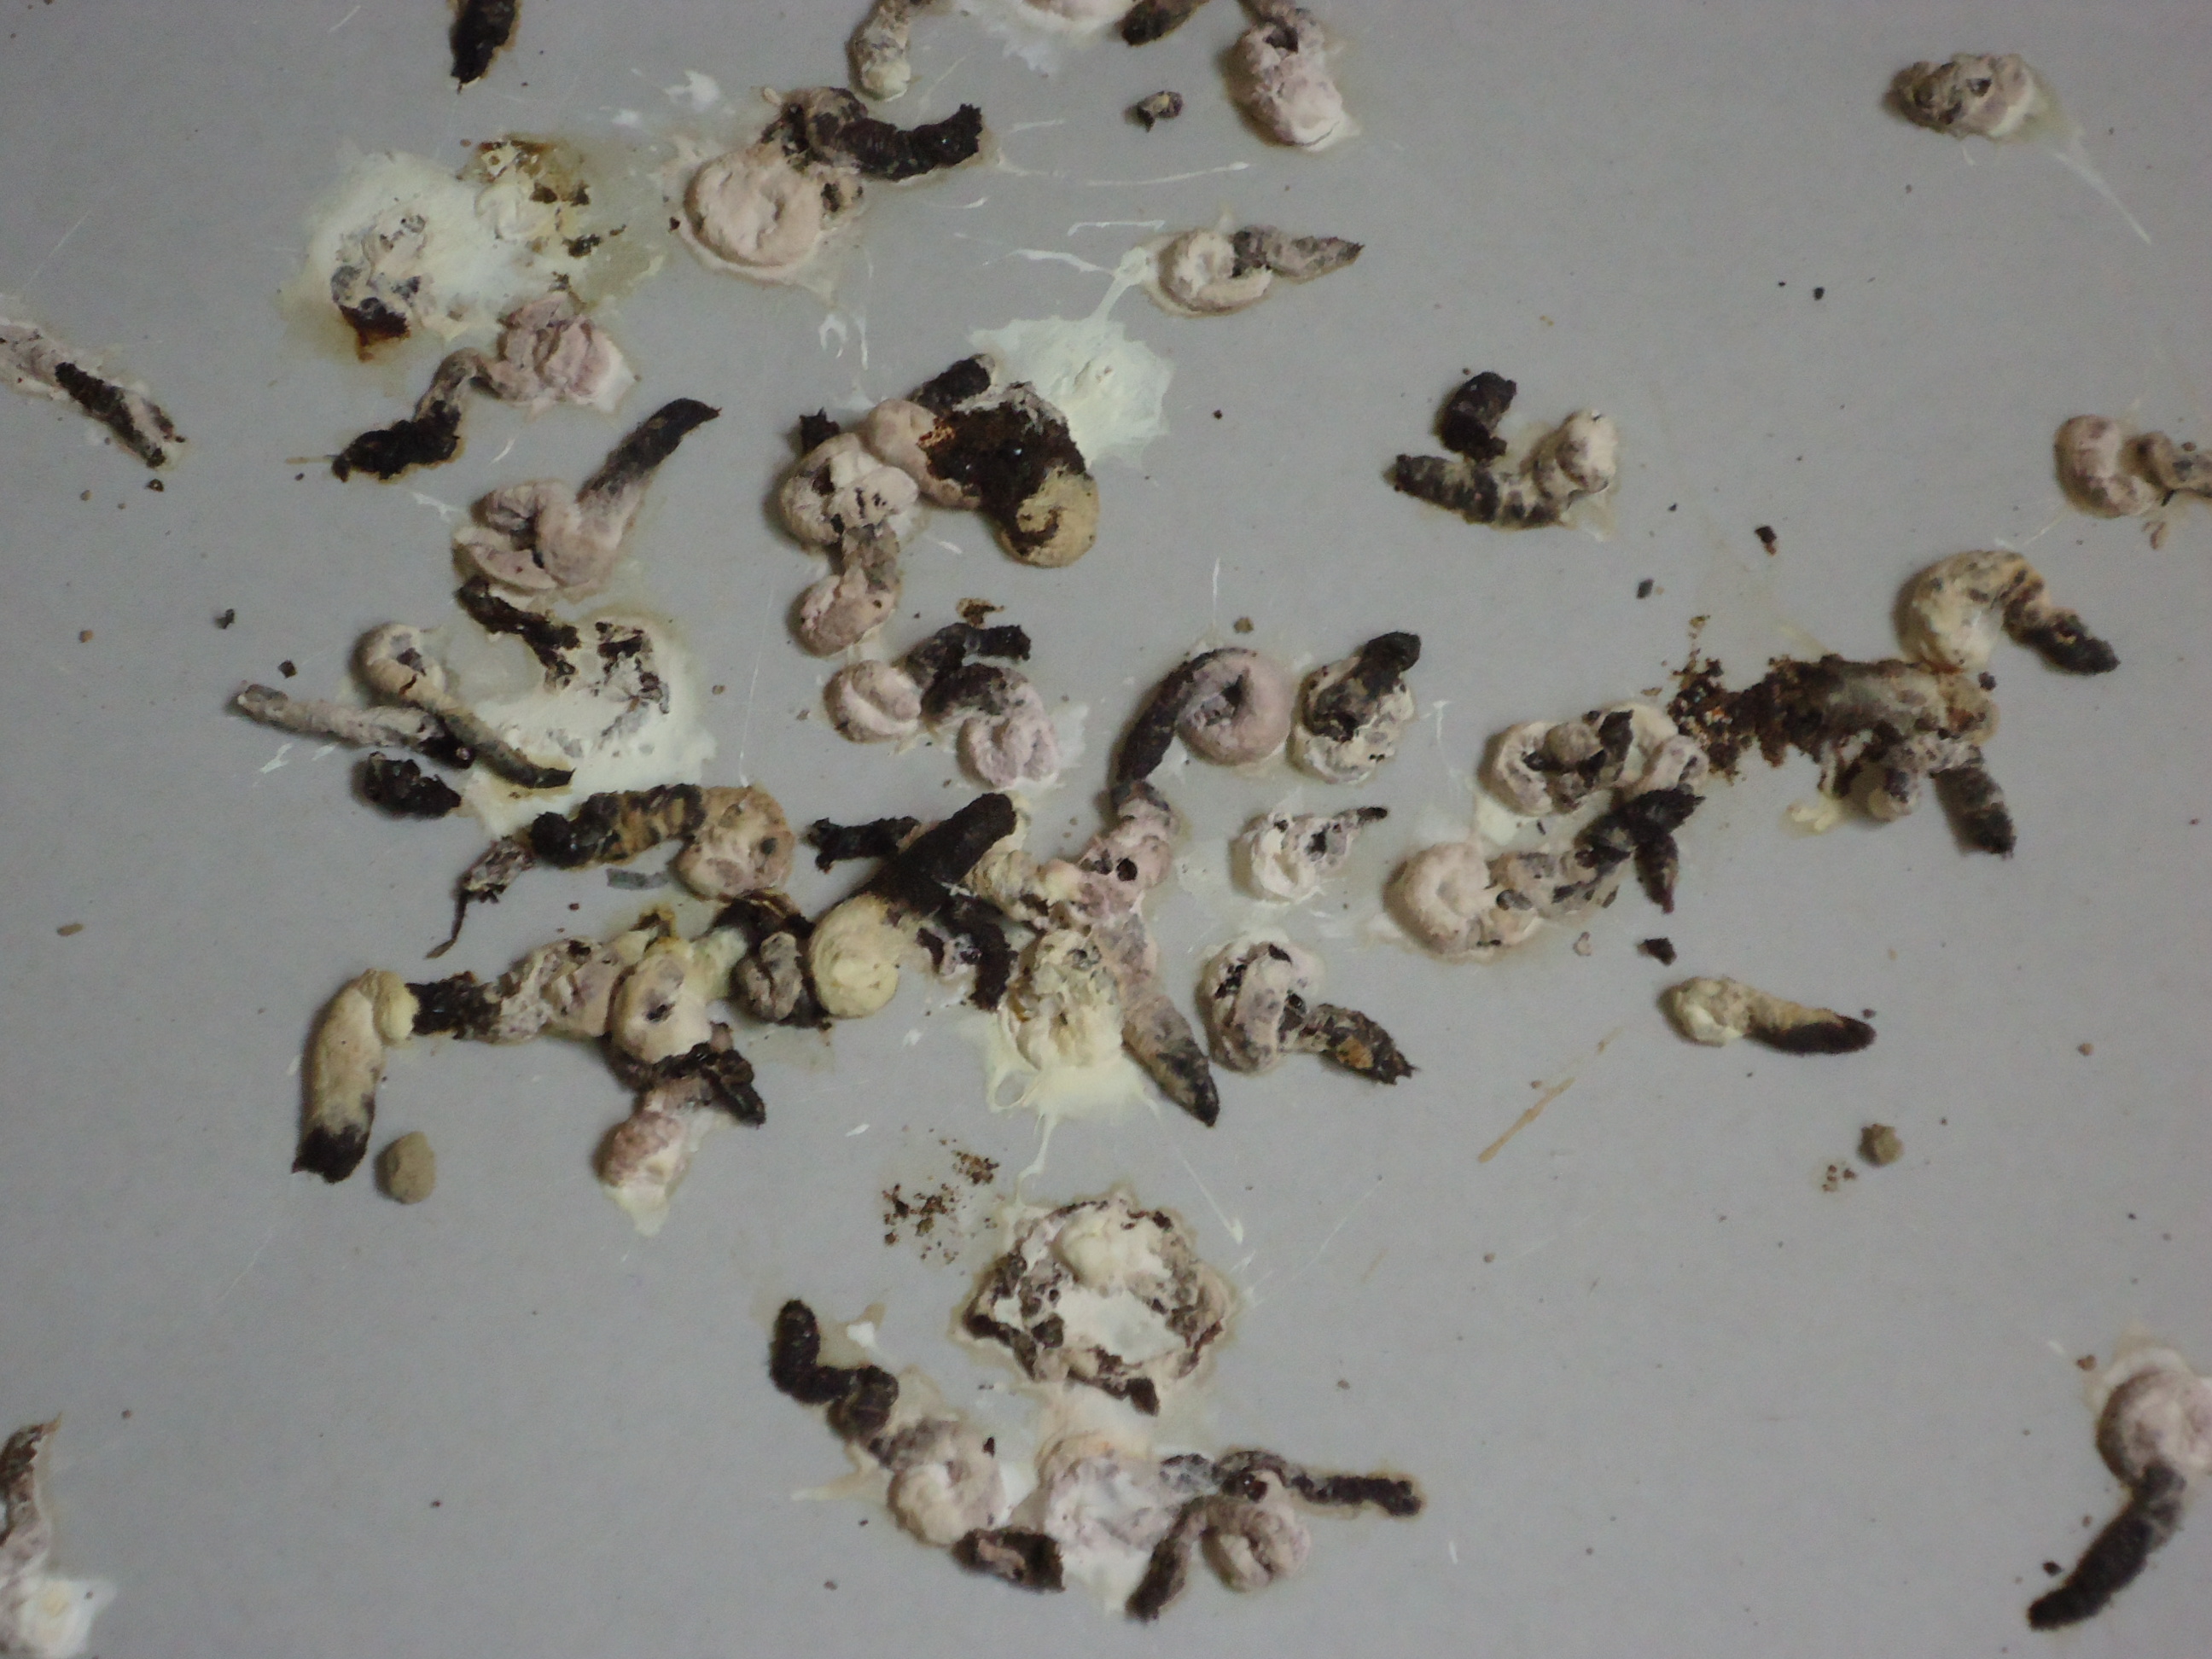 何の糞 駆除研究所 本日の現場ブログ イタチ コウモリ ムカデ トコジラミ等の害虫対策は駆除研究所